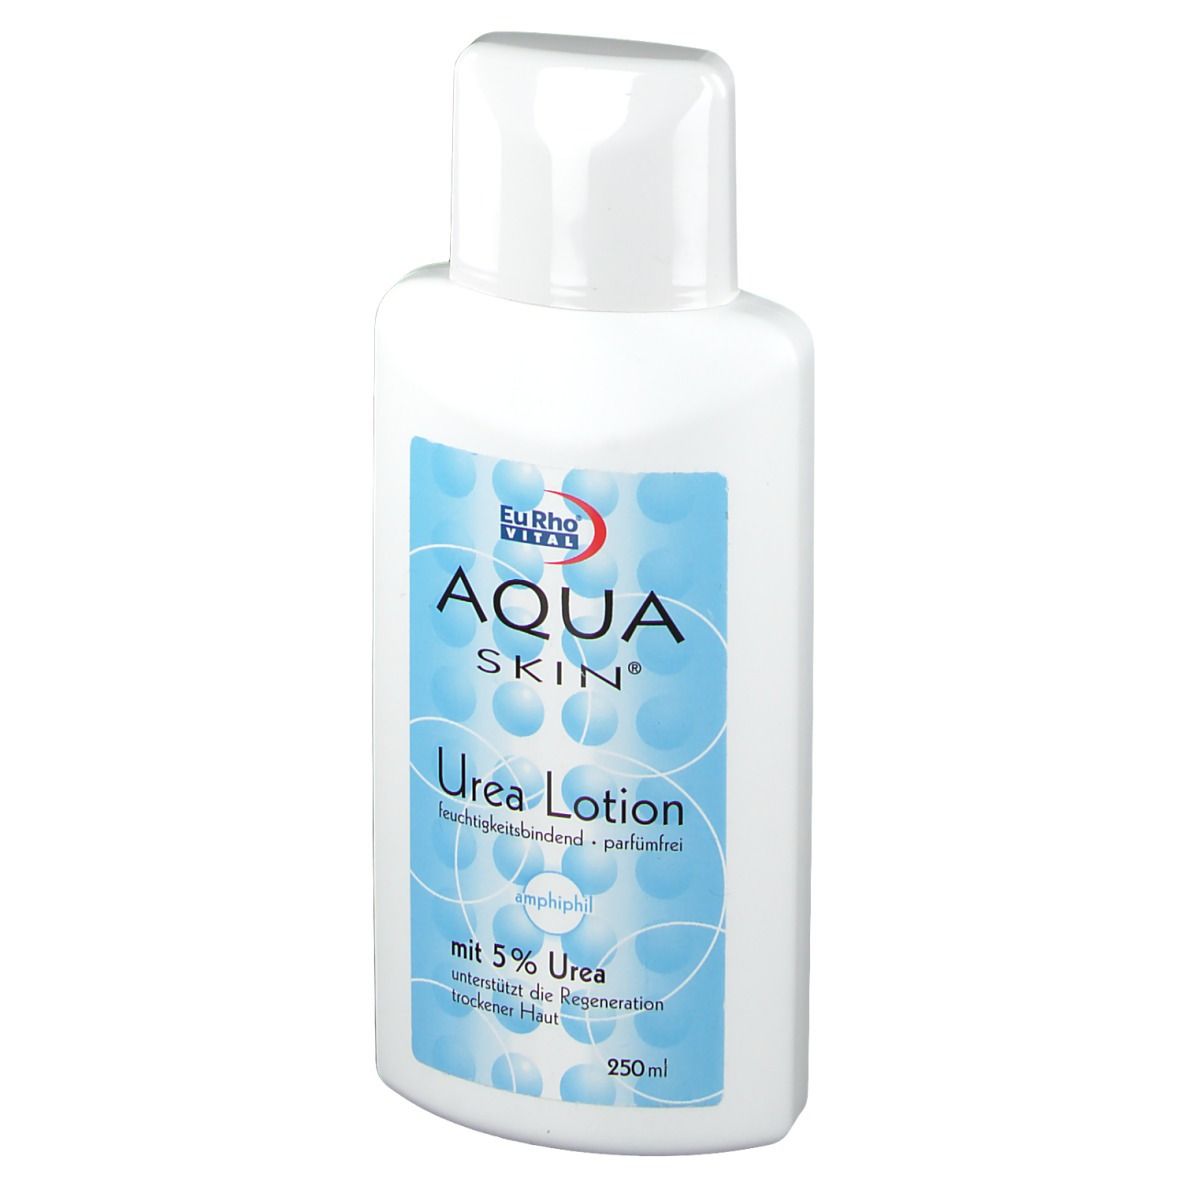 Aqua Skin® Urea Lotion